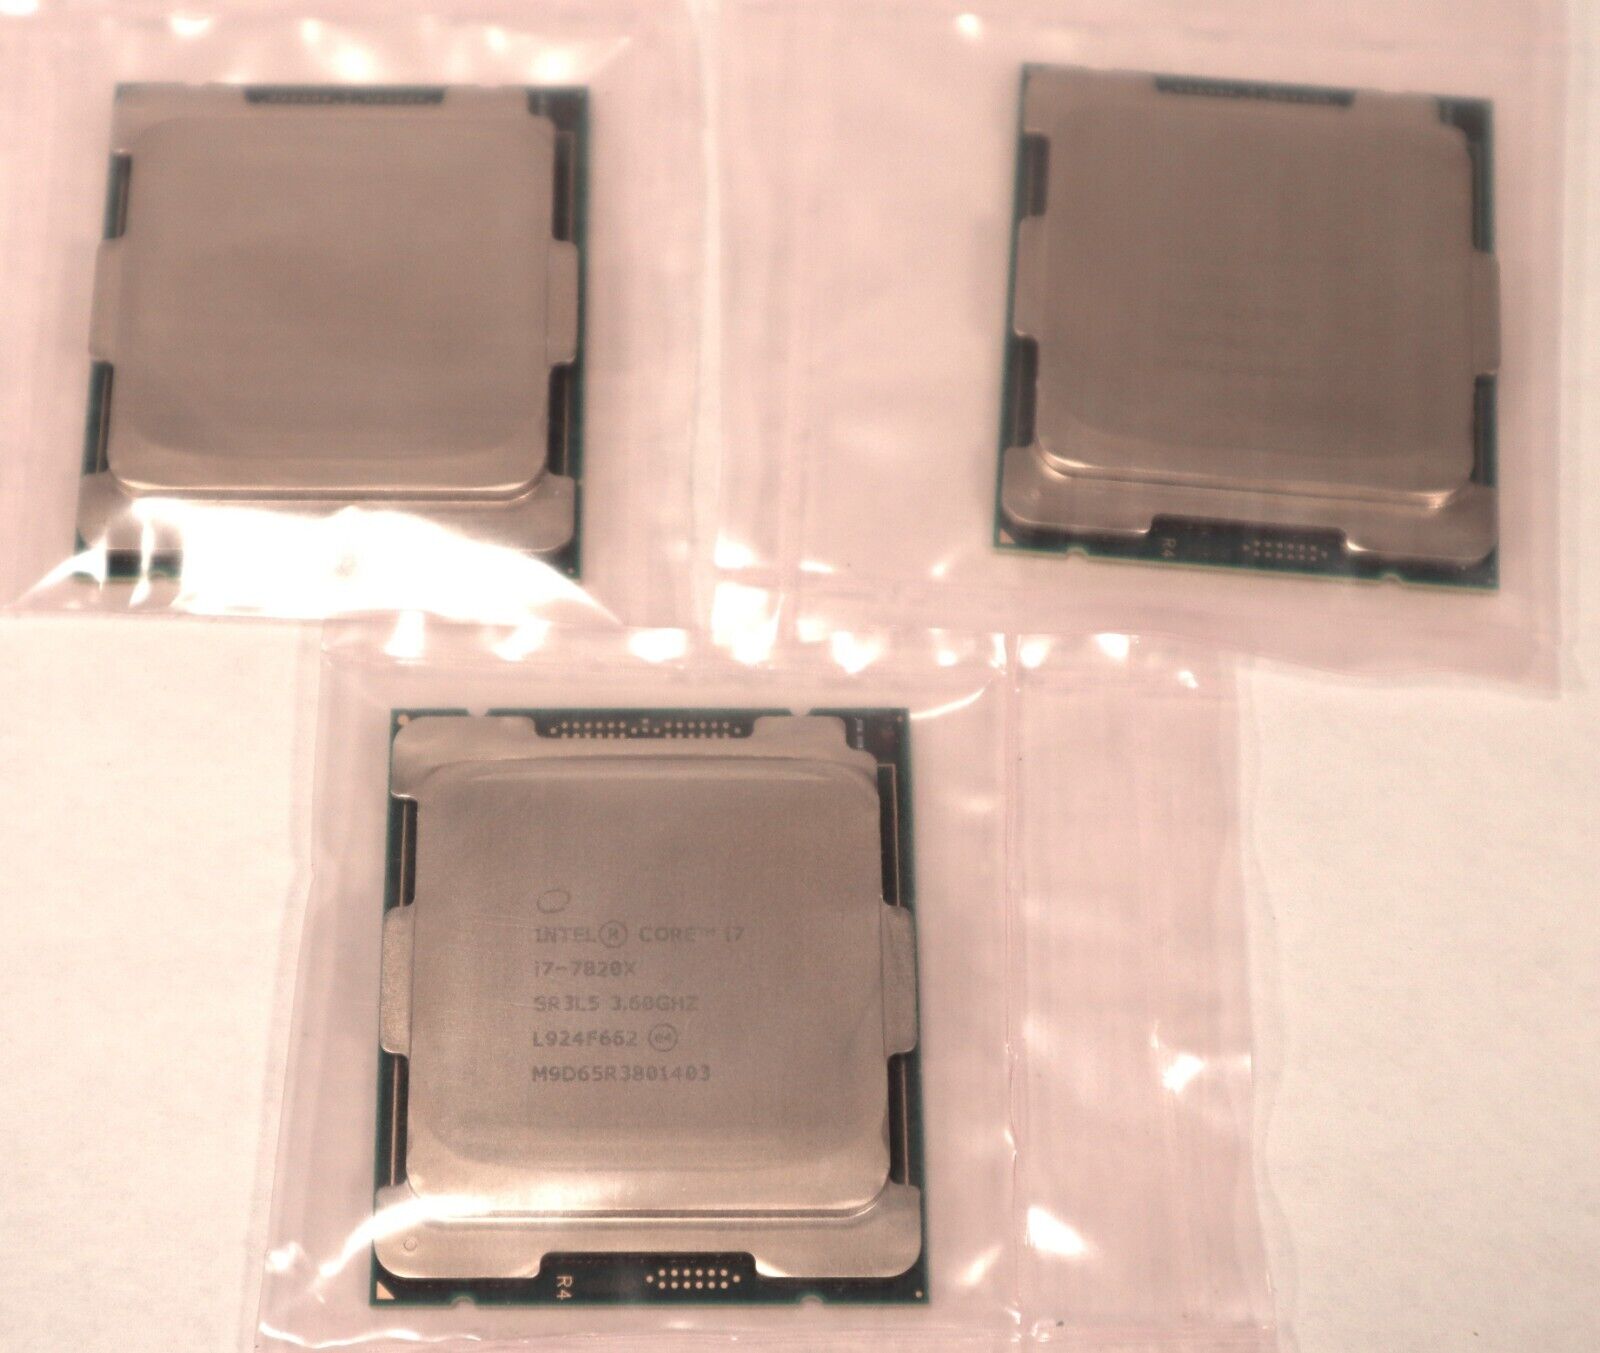 Lot of 3 Intel Core i7-7820X SR3L5 3.60GHz 11MB 8-Core LGA2066 CPUs EL4194